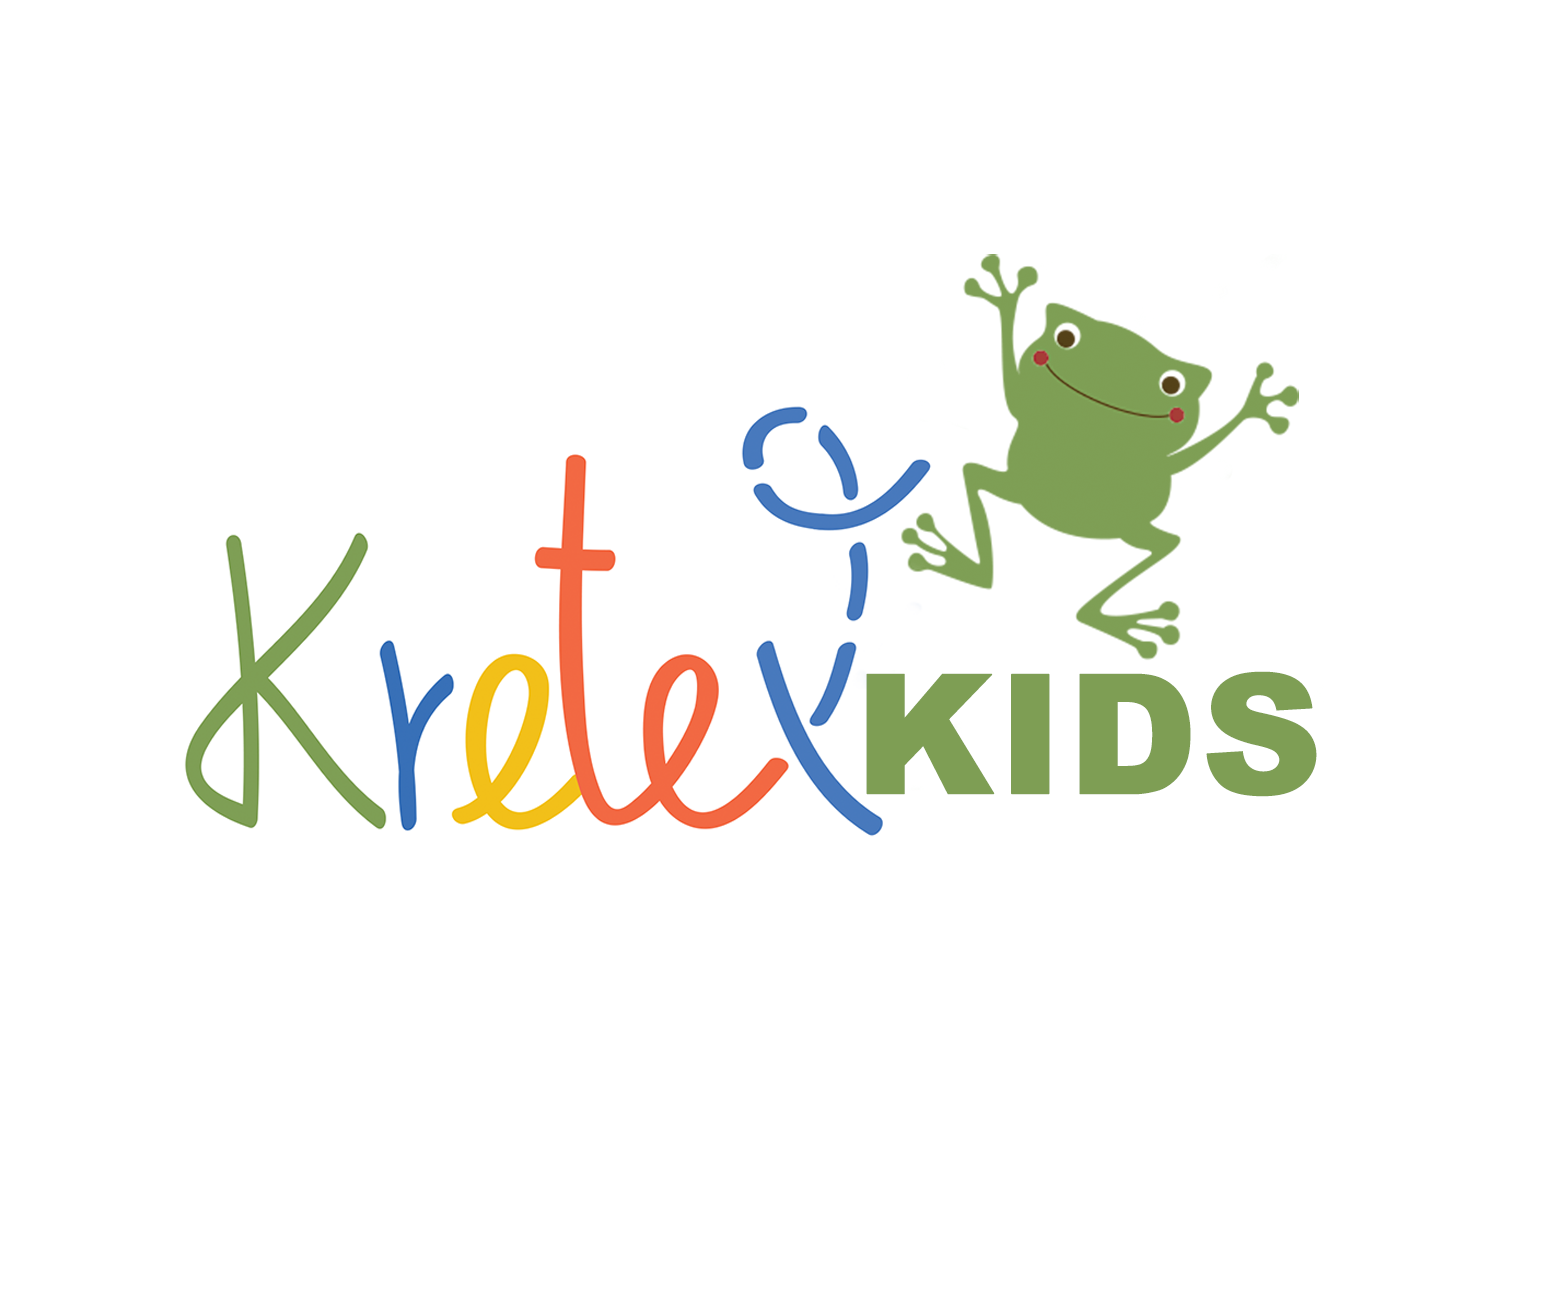 Kretex kids